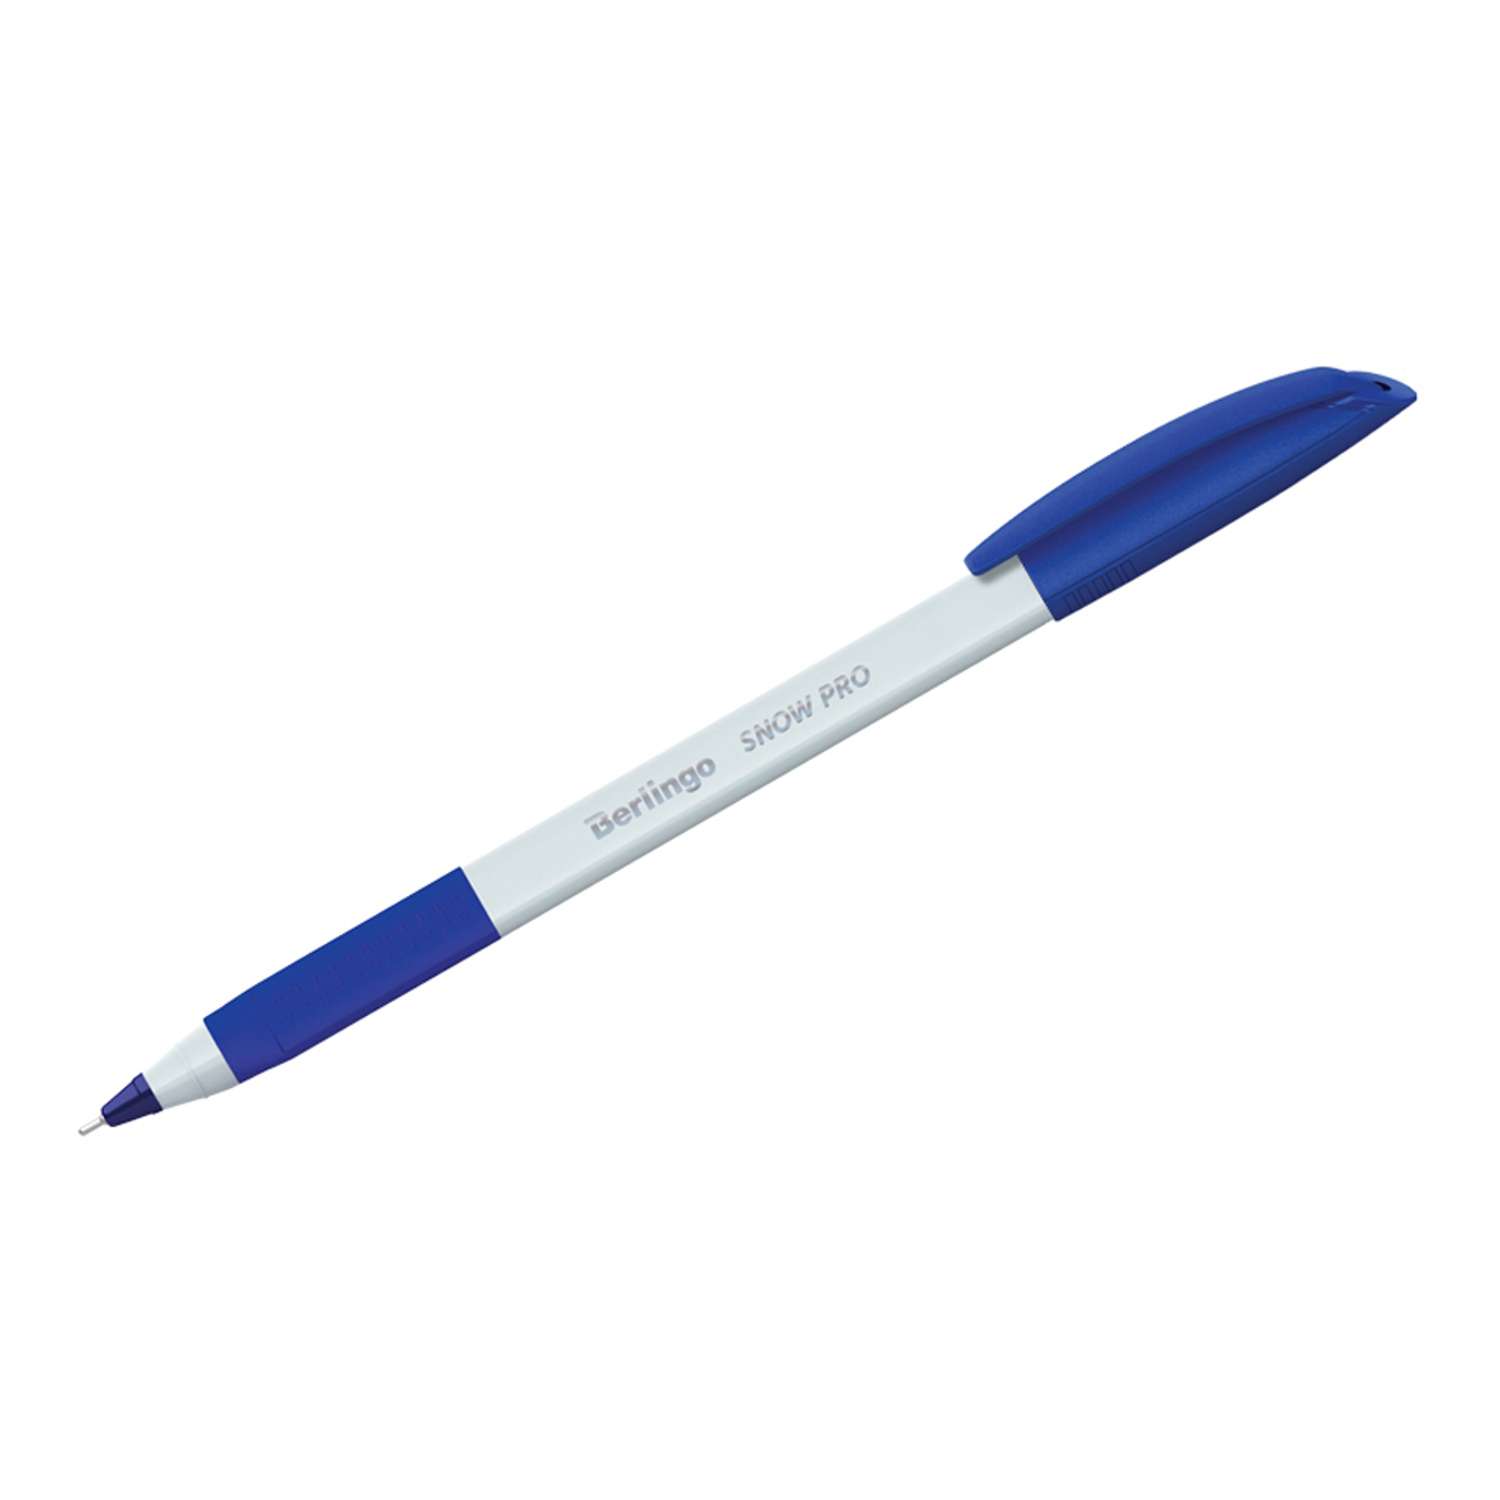 Ручка шариковая Berlingo Triangle Snow Pro синяя 07мм трехгранная грип набор 12 шт - фото 1